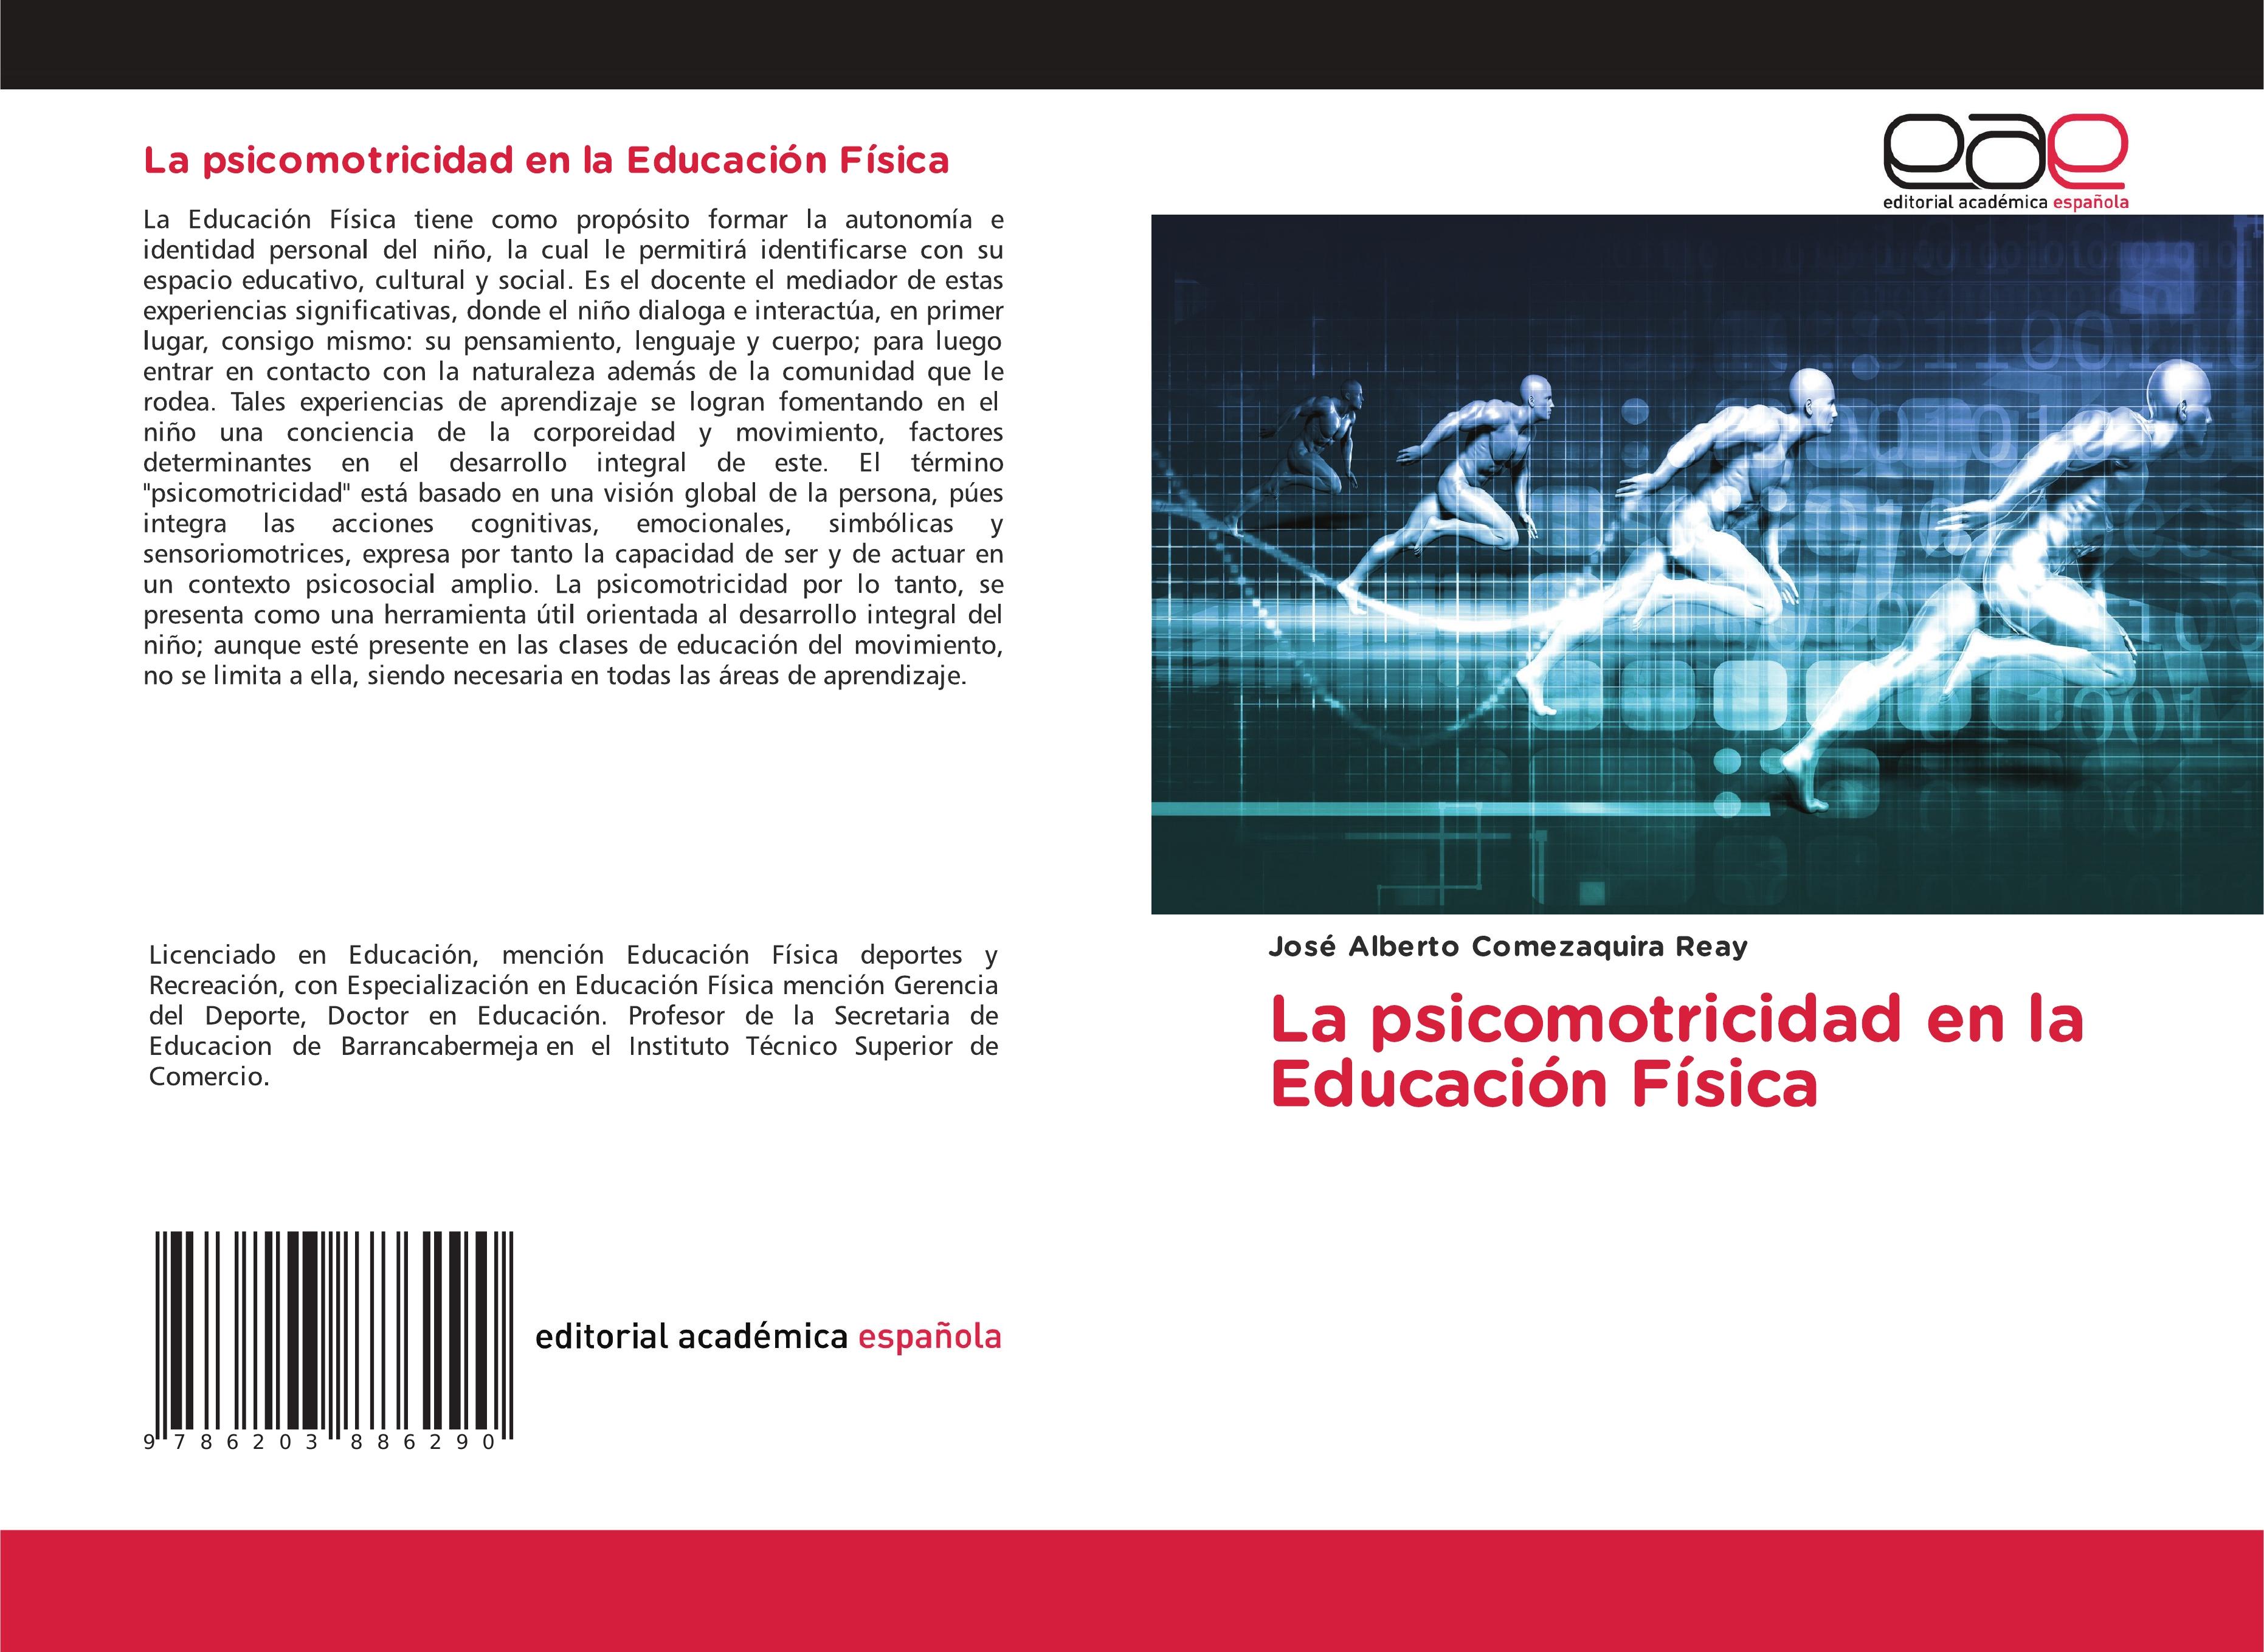 La psicomotricidad en la Educación Física - Comezaquira Reay, José Alberto